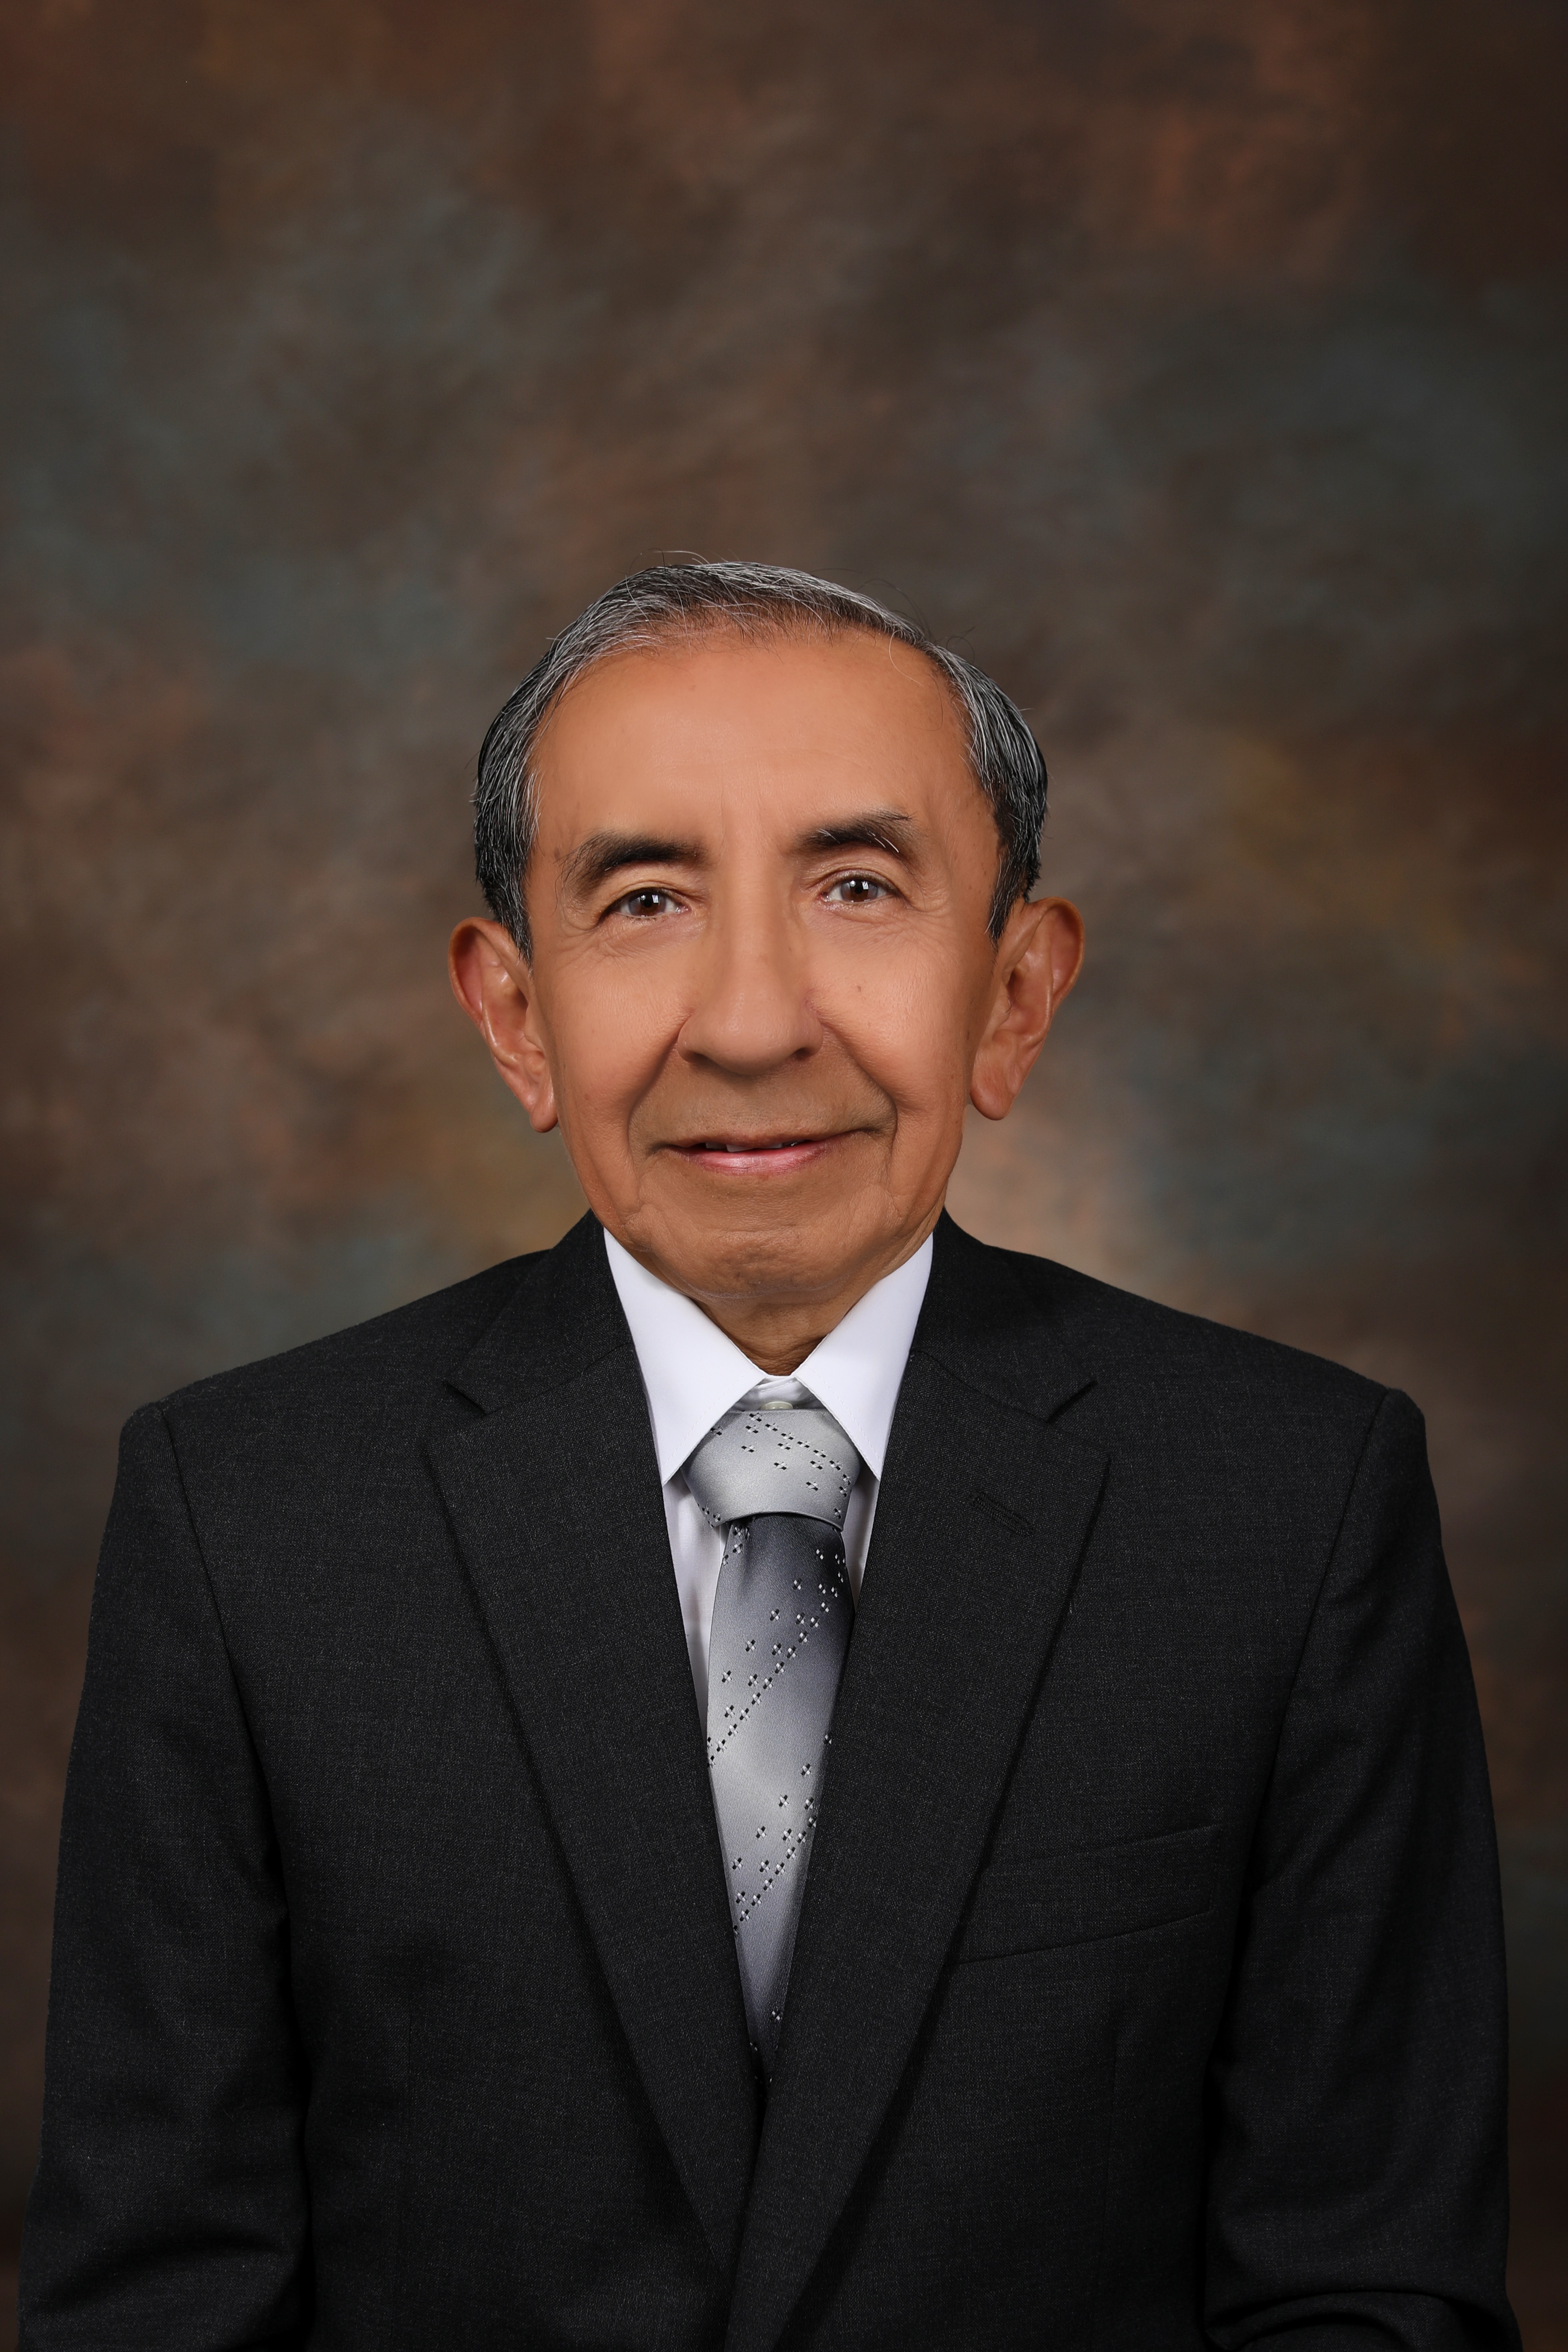 Dr. Jose Manuel Cabezas